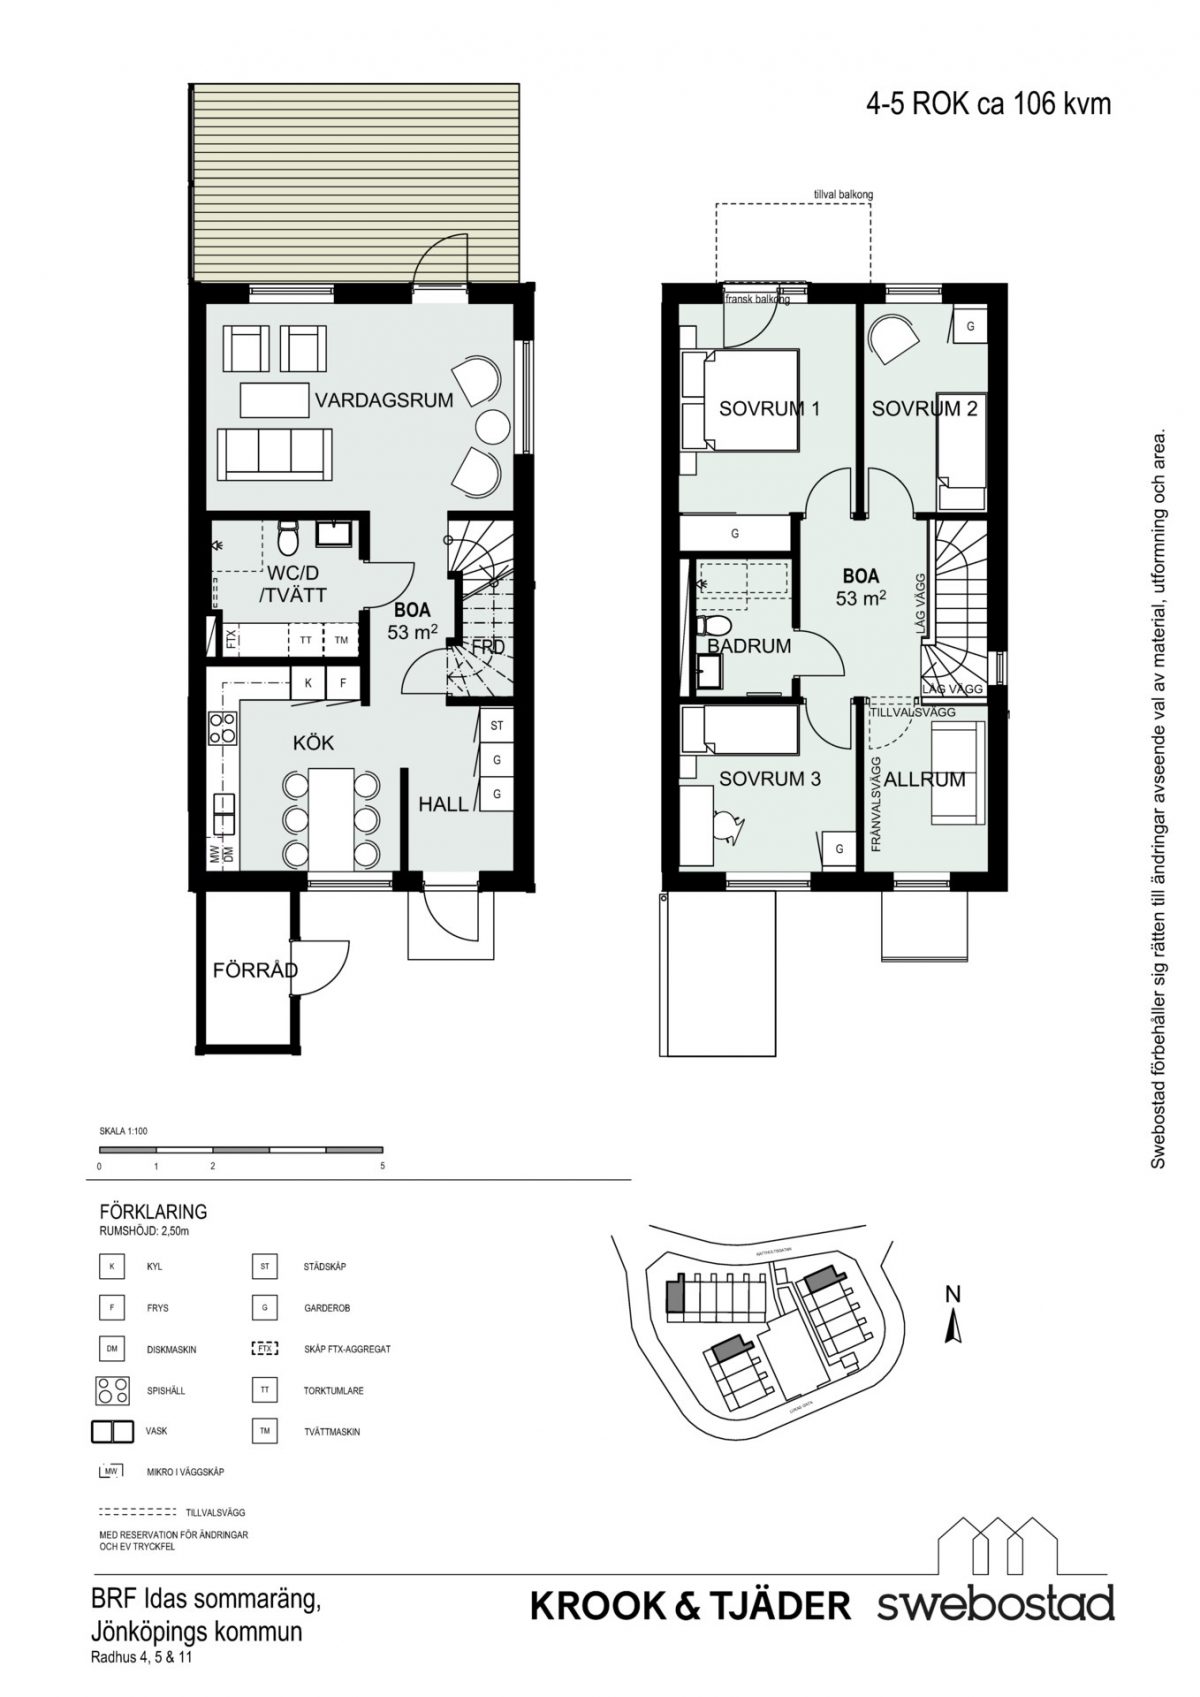 Planlösning hus 4,5,11 och orienteringsfigur